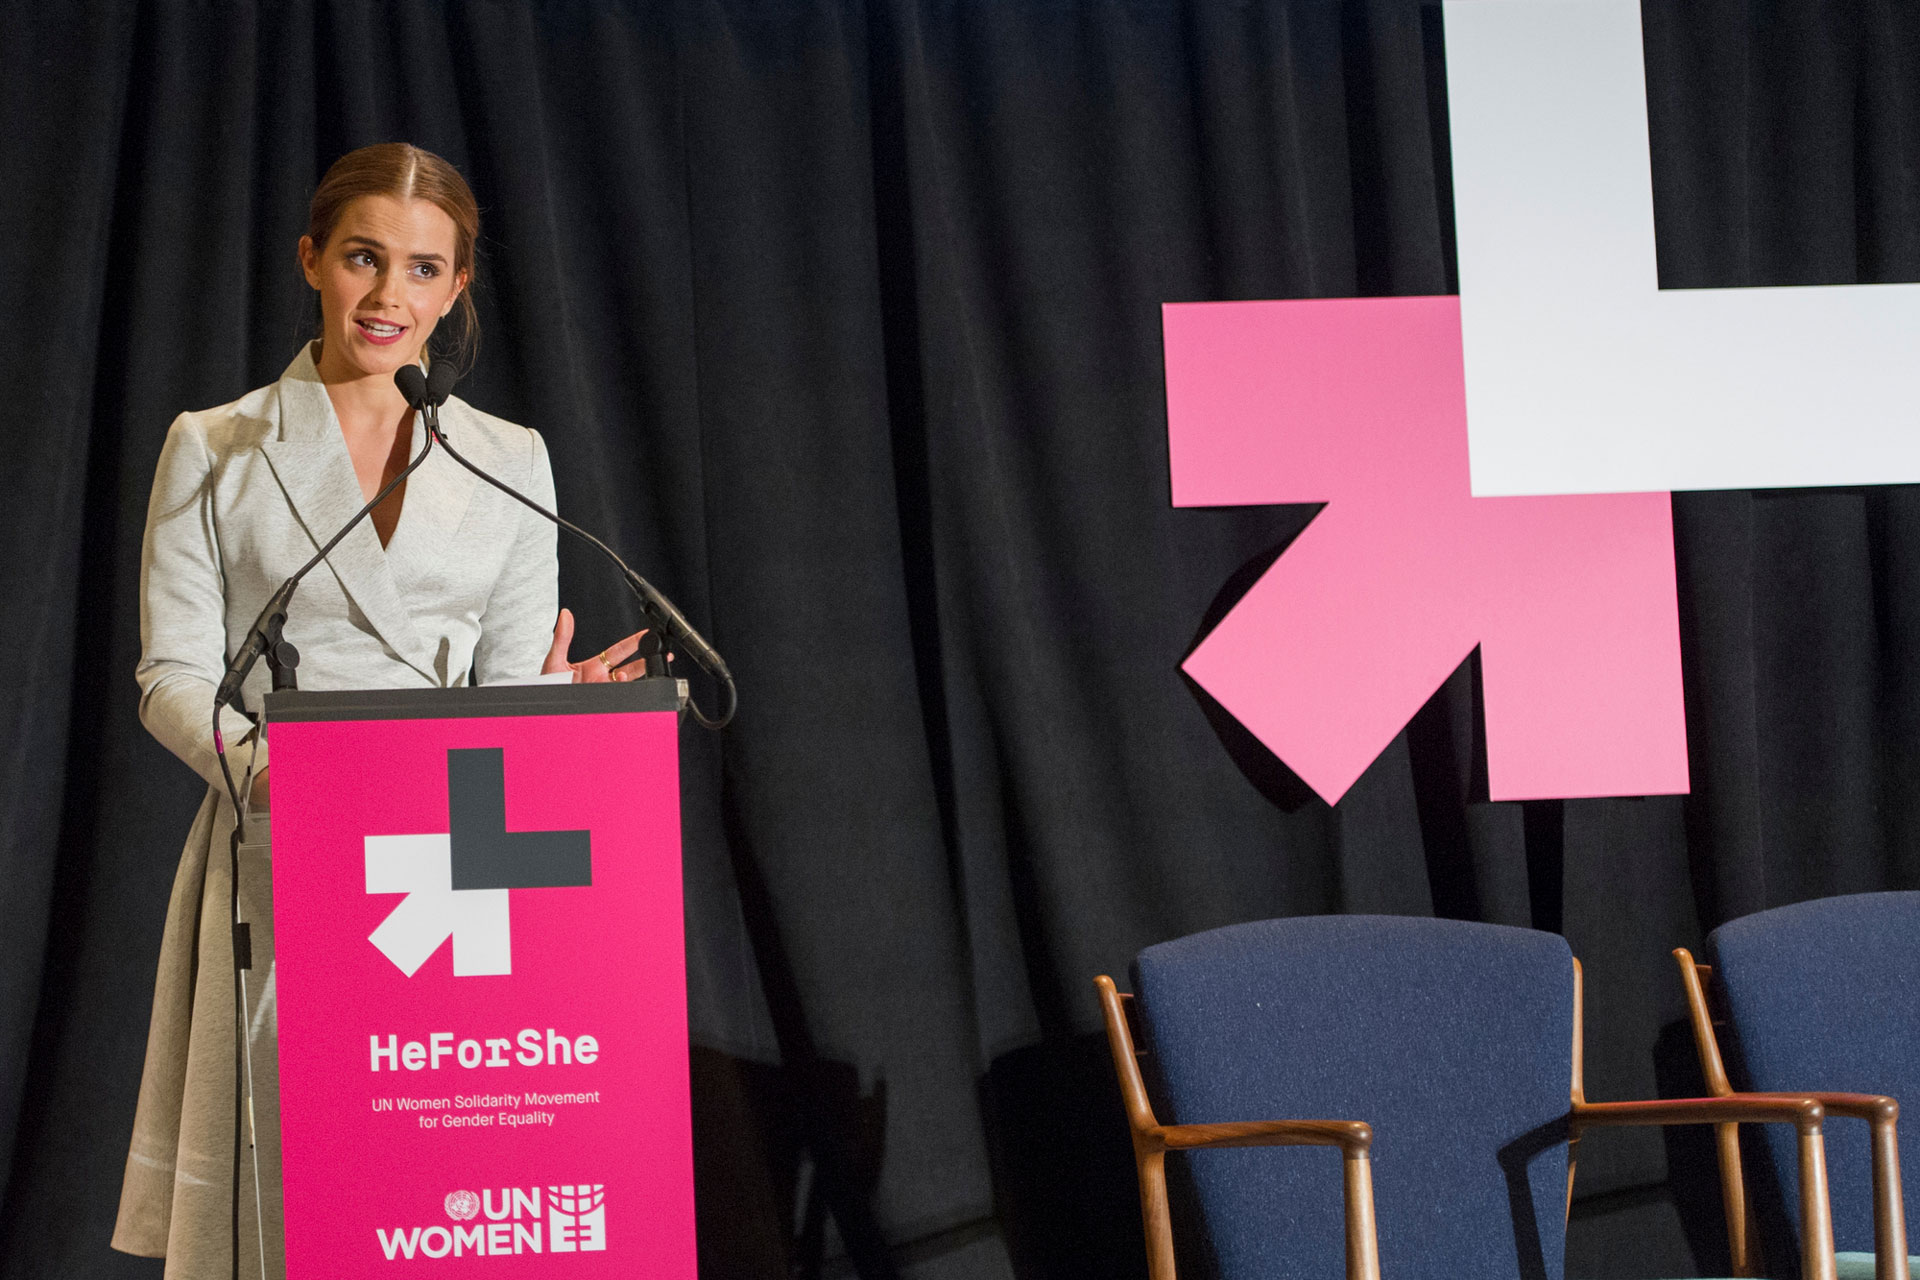 <p><sub>Britanska igralka in ambasadorka dobre volje Agencije ZN za ženske Emma Watson je sogostiteljica posebnega dogodka, ki ga organizira Agencija ZN za ženske (UN Women), katera krepi enakost spolov in vlogo žensk. Dogodek poteka v podporo njihovi kampanji OnZanjo (HeForShe).</sub></p>